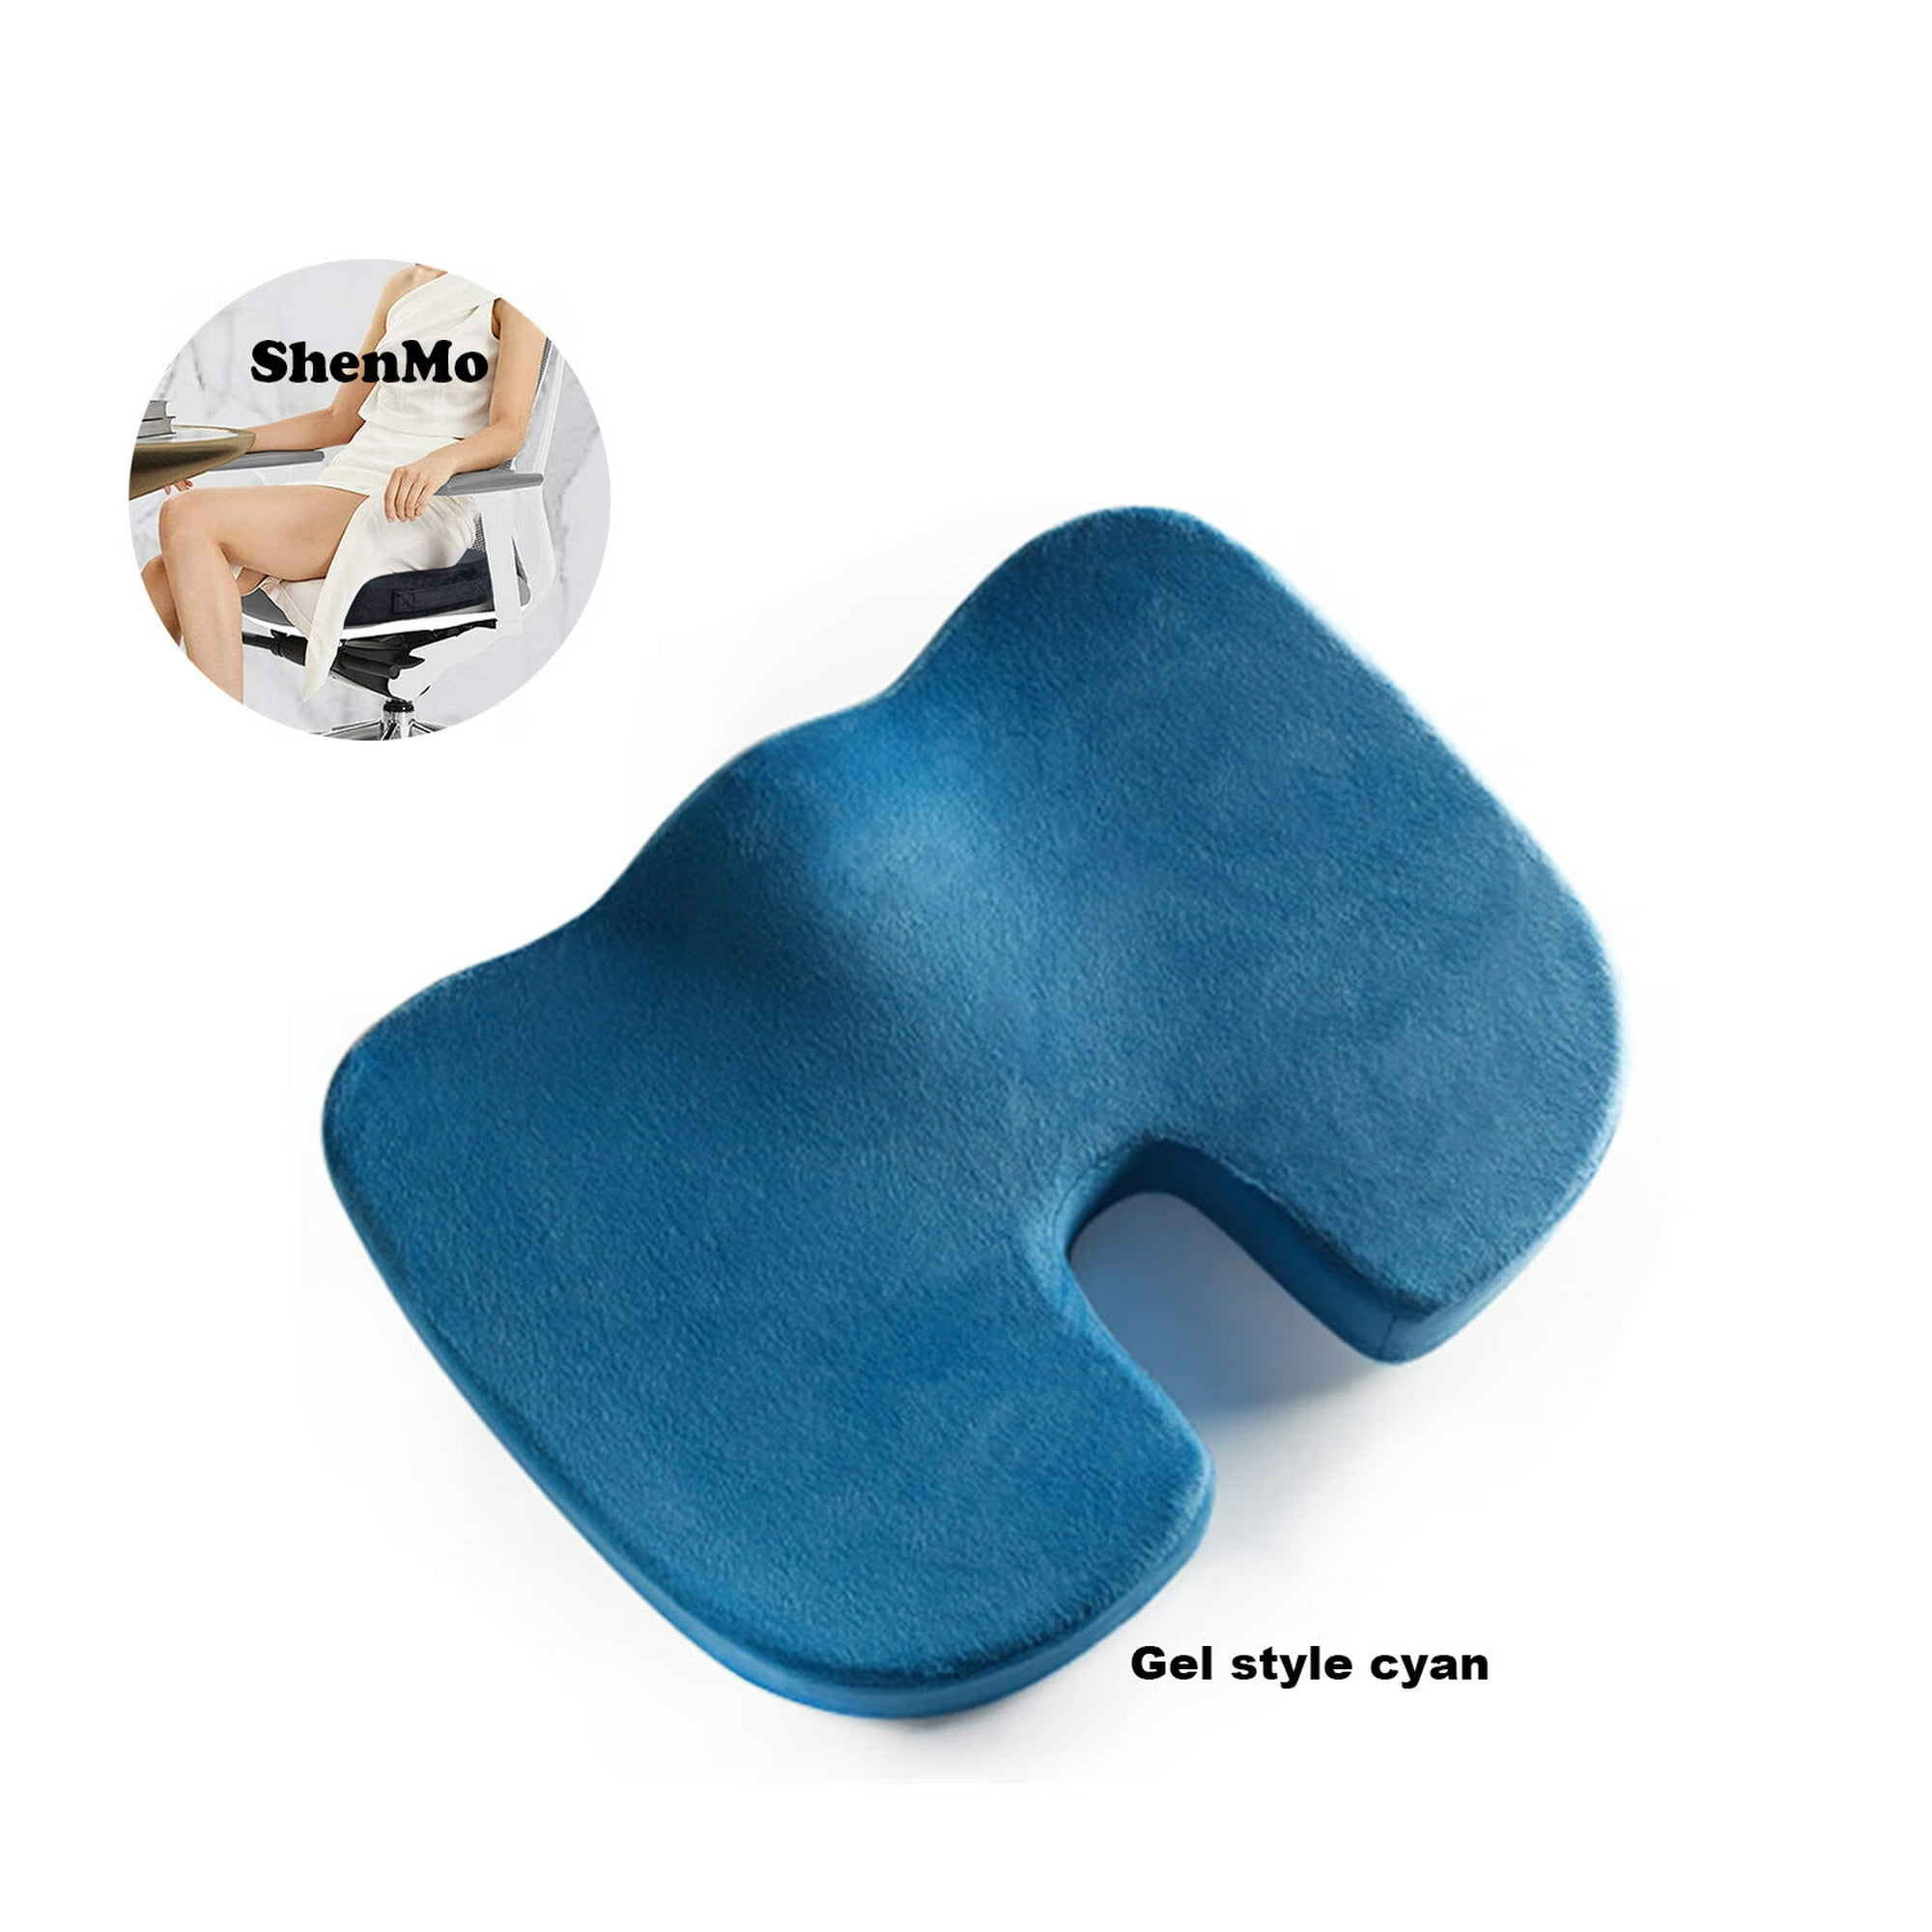 Cojín de gel para asiento – Cojín ortopédico antideslizante de gel y coxis  para el dolor de coxis, silla de oficina, silla de ruedas, alivio del dolor